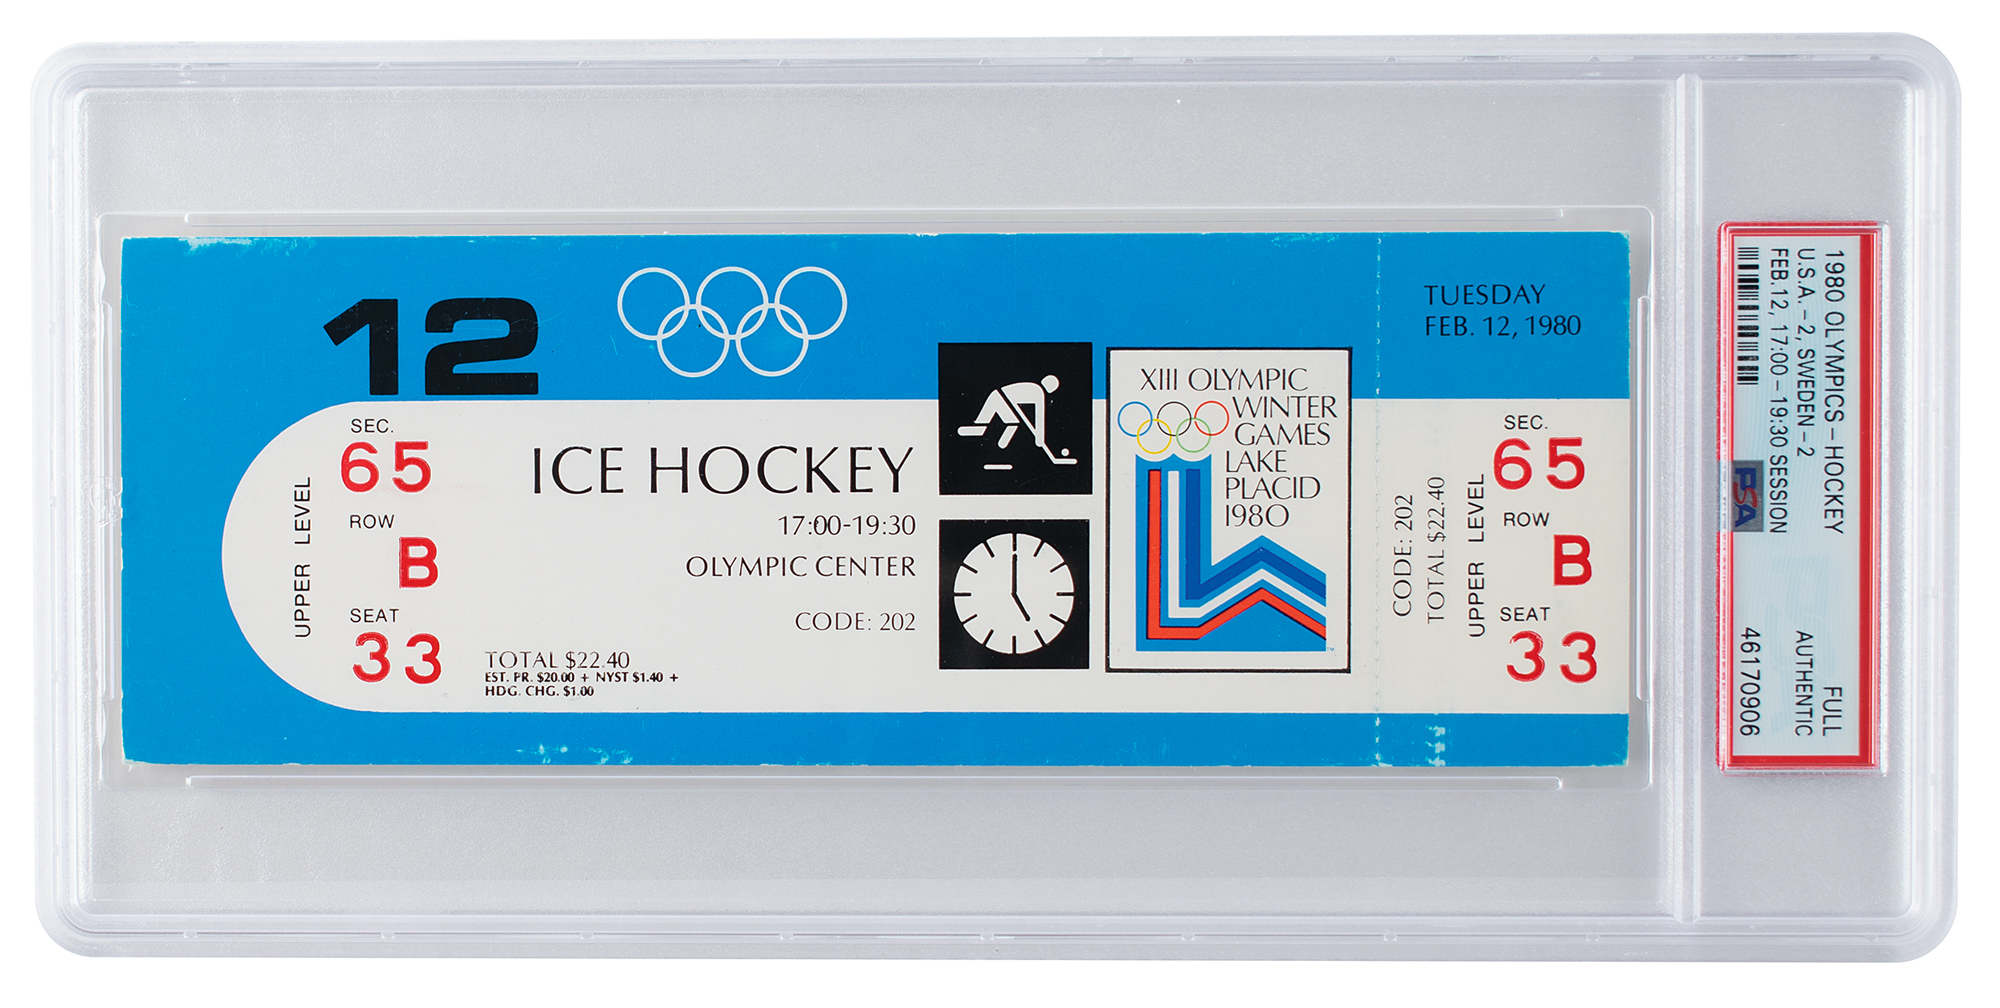 Lot #6106 Lake Placid 1980 Winter Olympics USA Hockey Ticket (2/12)